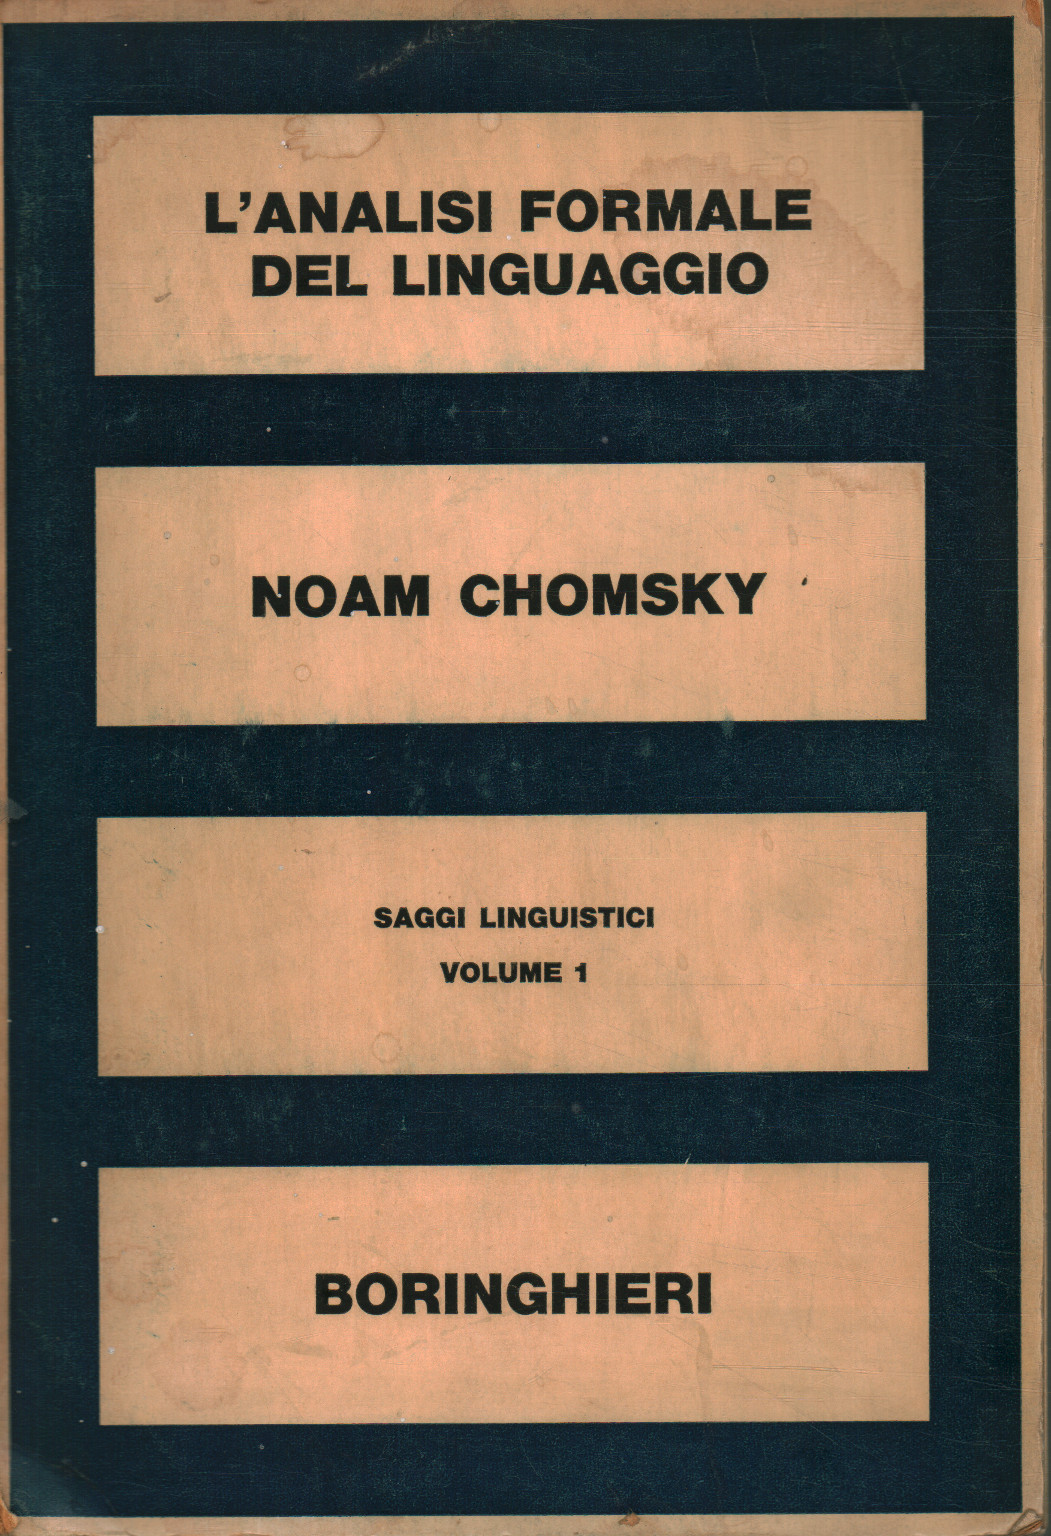 Saggi linguistici (volume 1). L'analisi formale d, Noam Chomsky